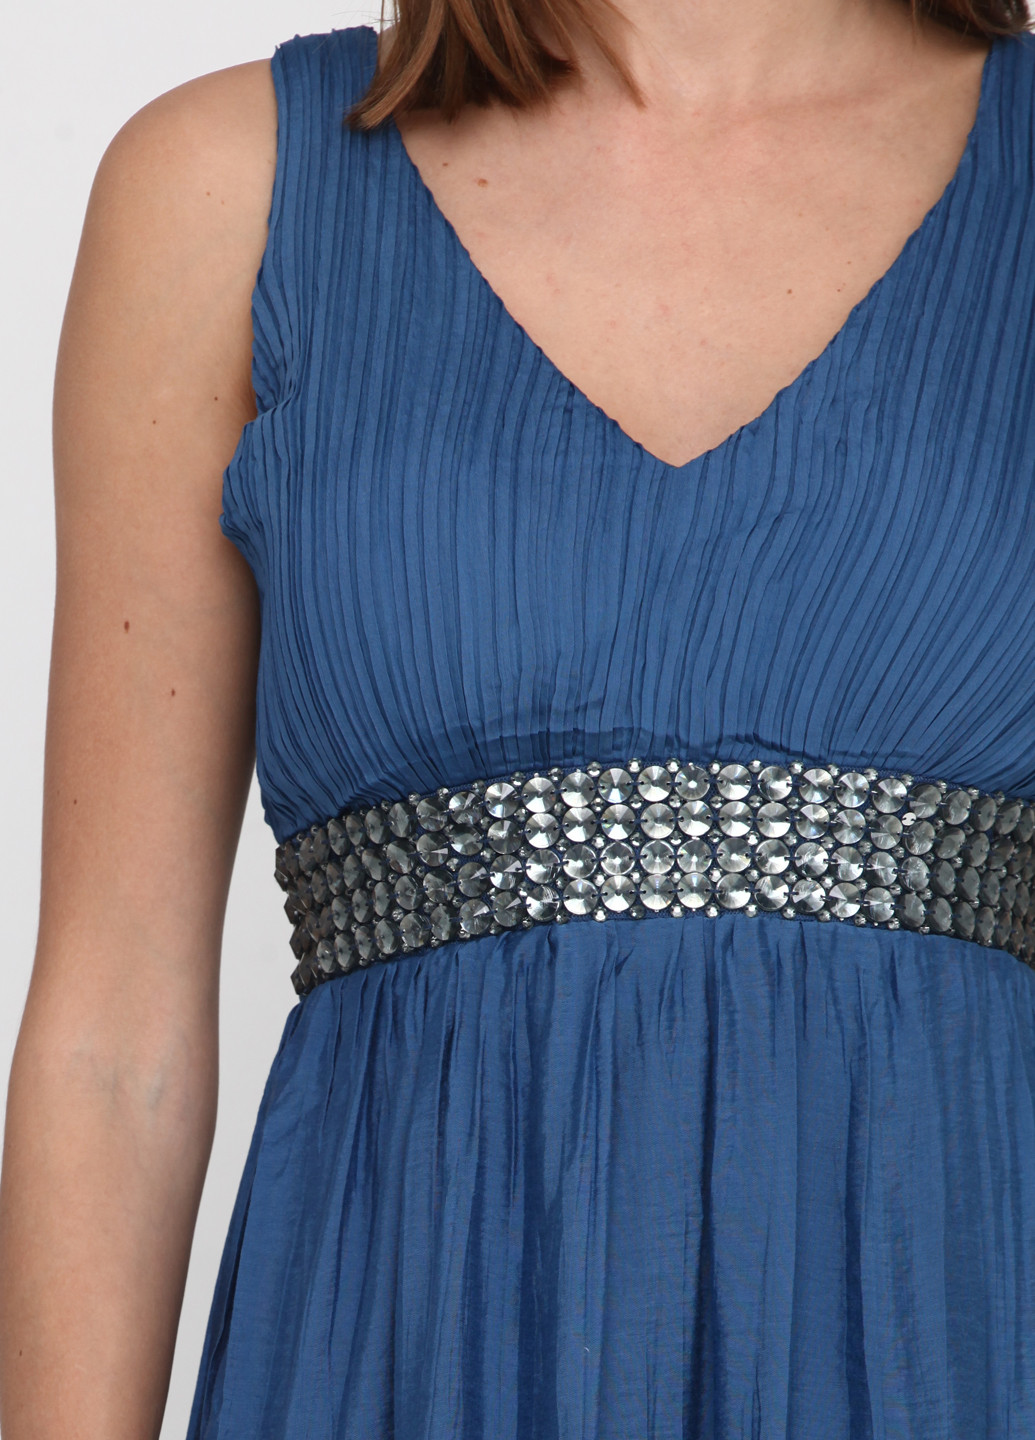 Синя вечірня сукня в грецькому стилі Whole Folks однотонна